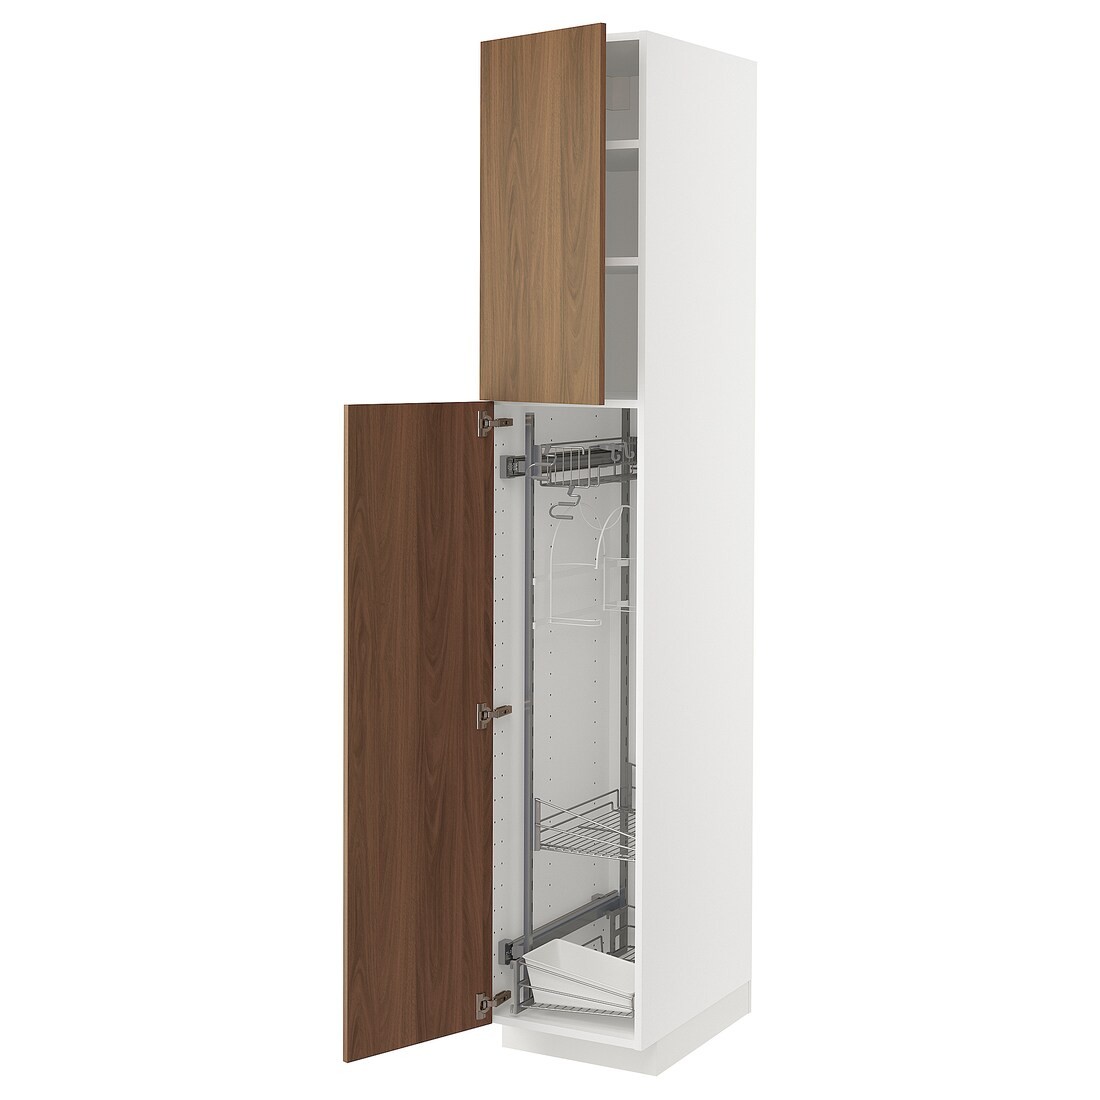 METOD Высокий шкаф с отделением для аксессуаров для уборки, белый / Имитация коричневого ореха, 40x60x220 см